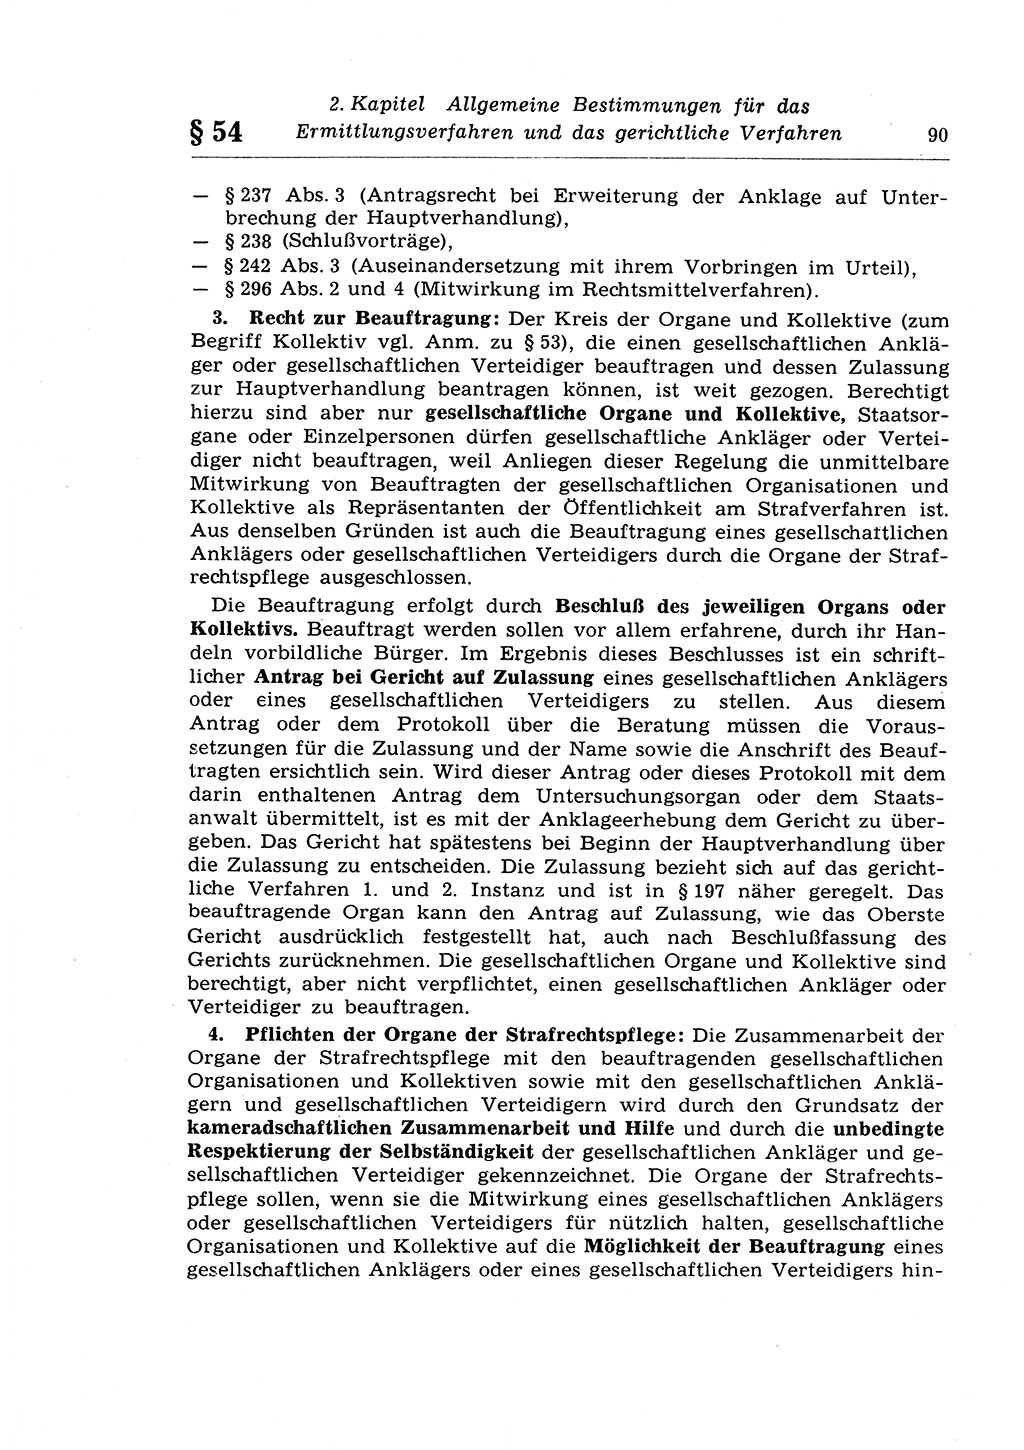 Strafprozeßrecht der DDR (Deutsche Demokratische Republik), Lehrkommentar zur Strafprozeßordnung (StPO) 1968, Seite 90 (Strafprozeßr. DDR Lehrkomm. StPO 19688, S. 90)